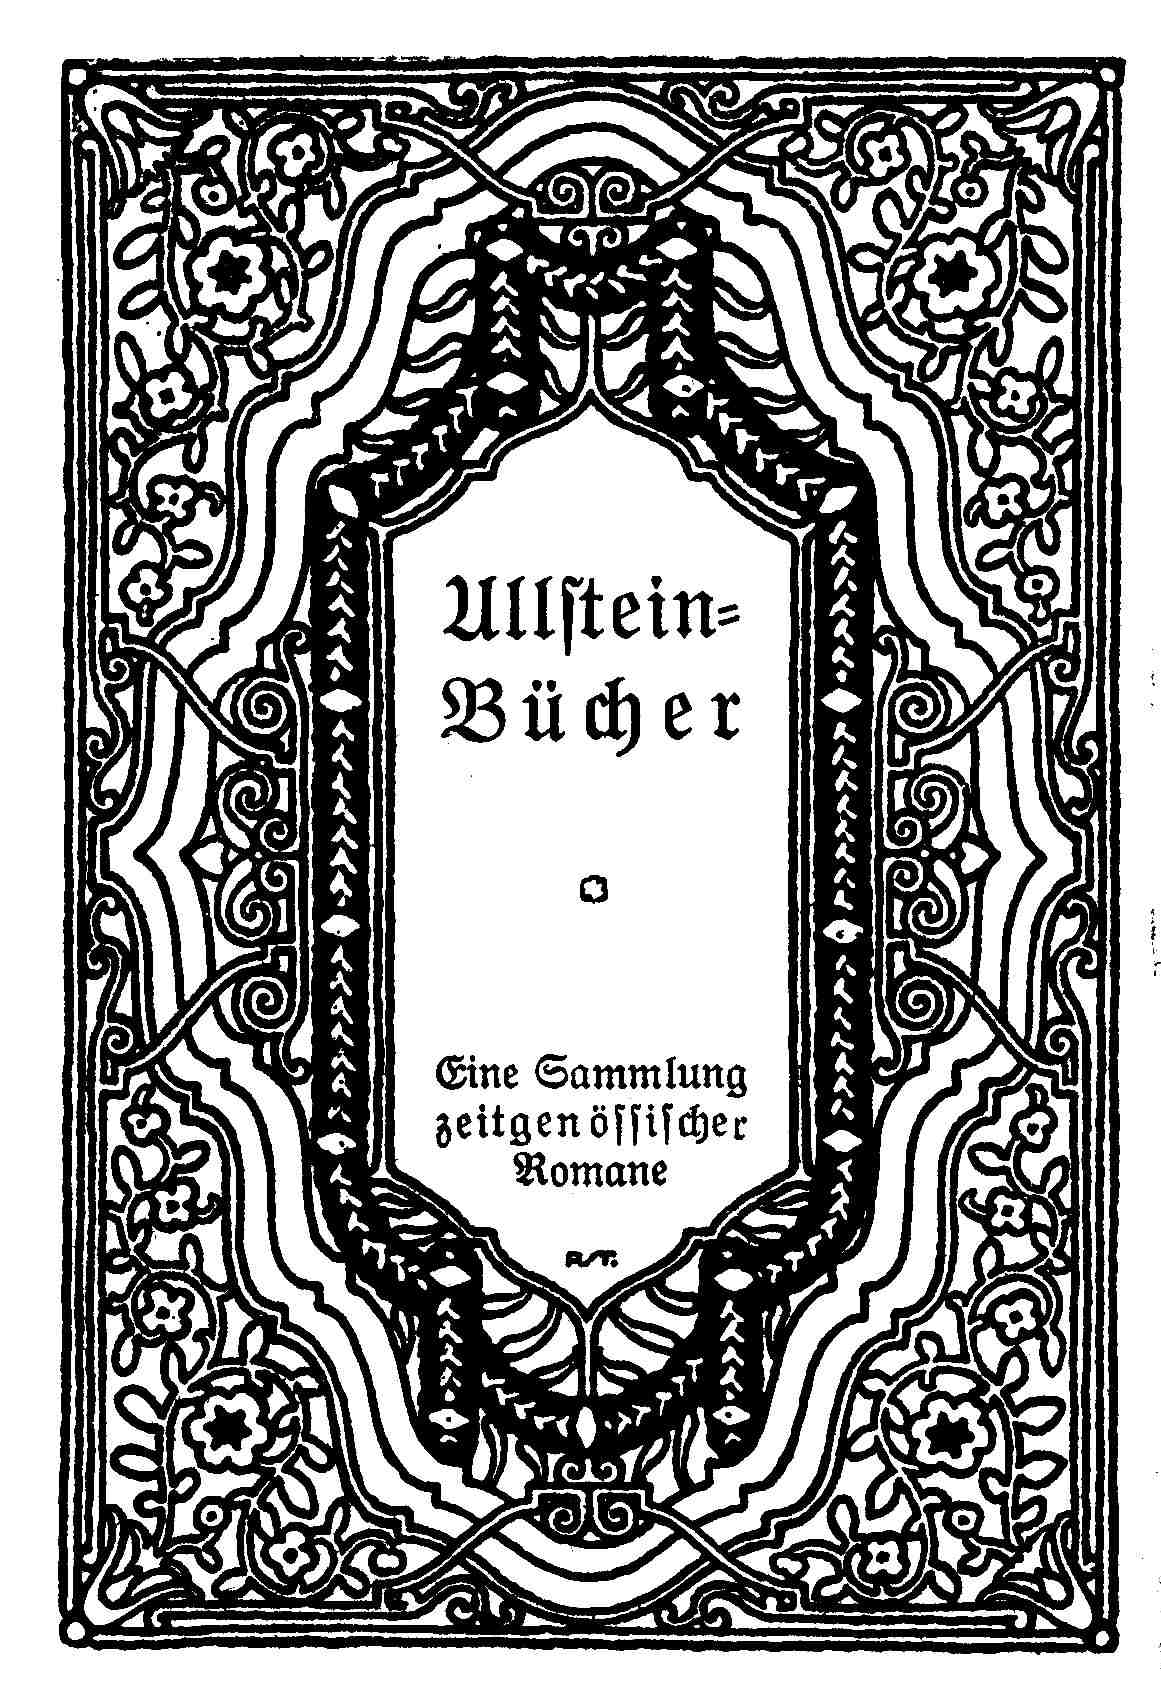 Ullstein-Bücher - Eine Sammlung zeitgenössischer Romane